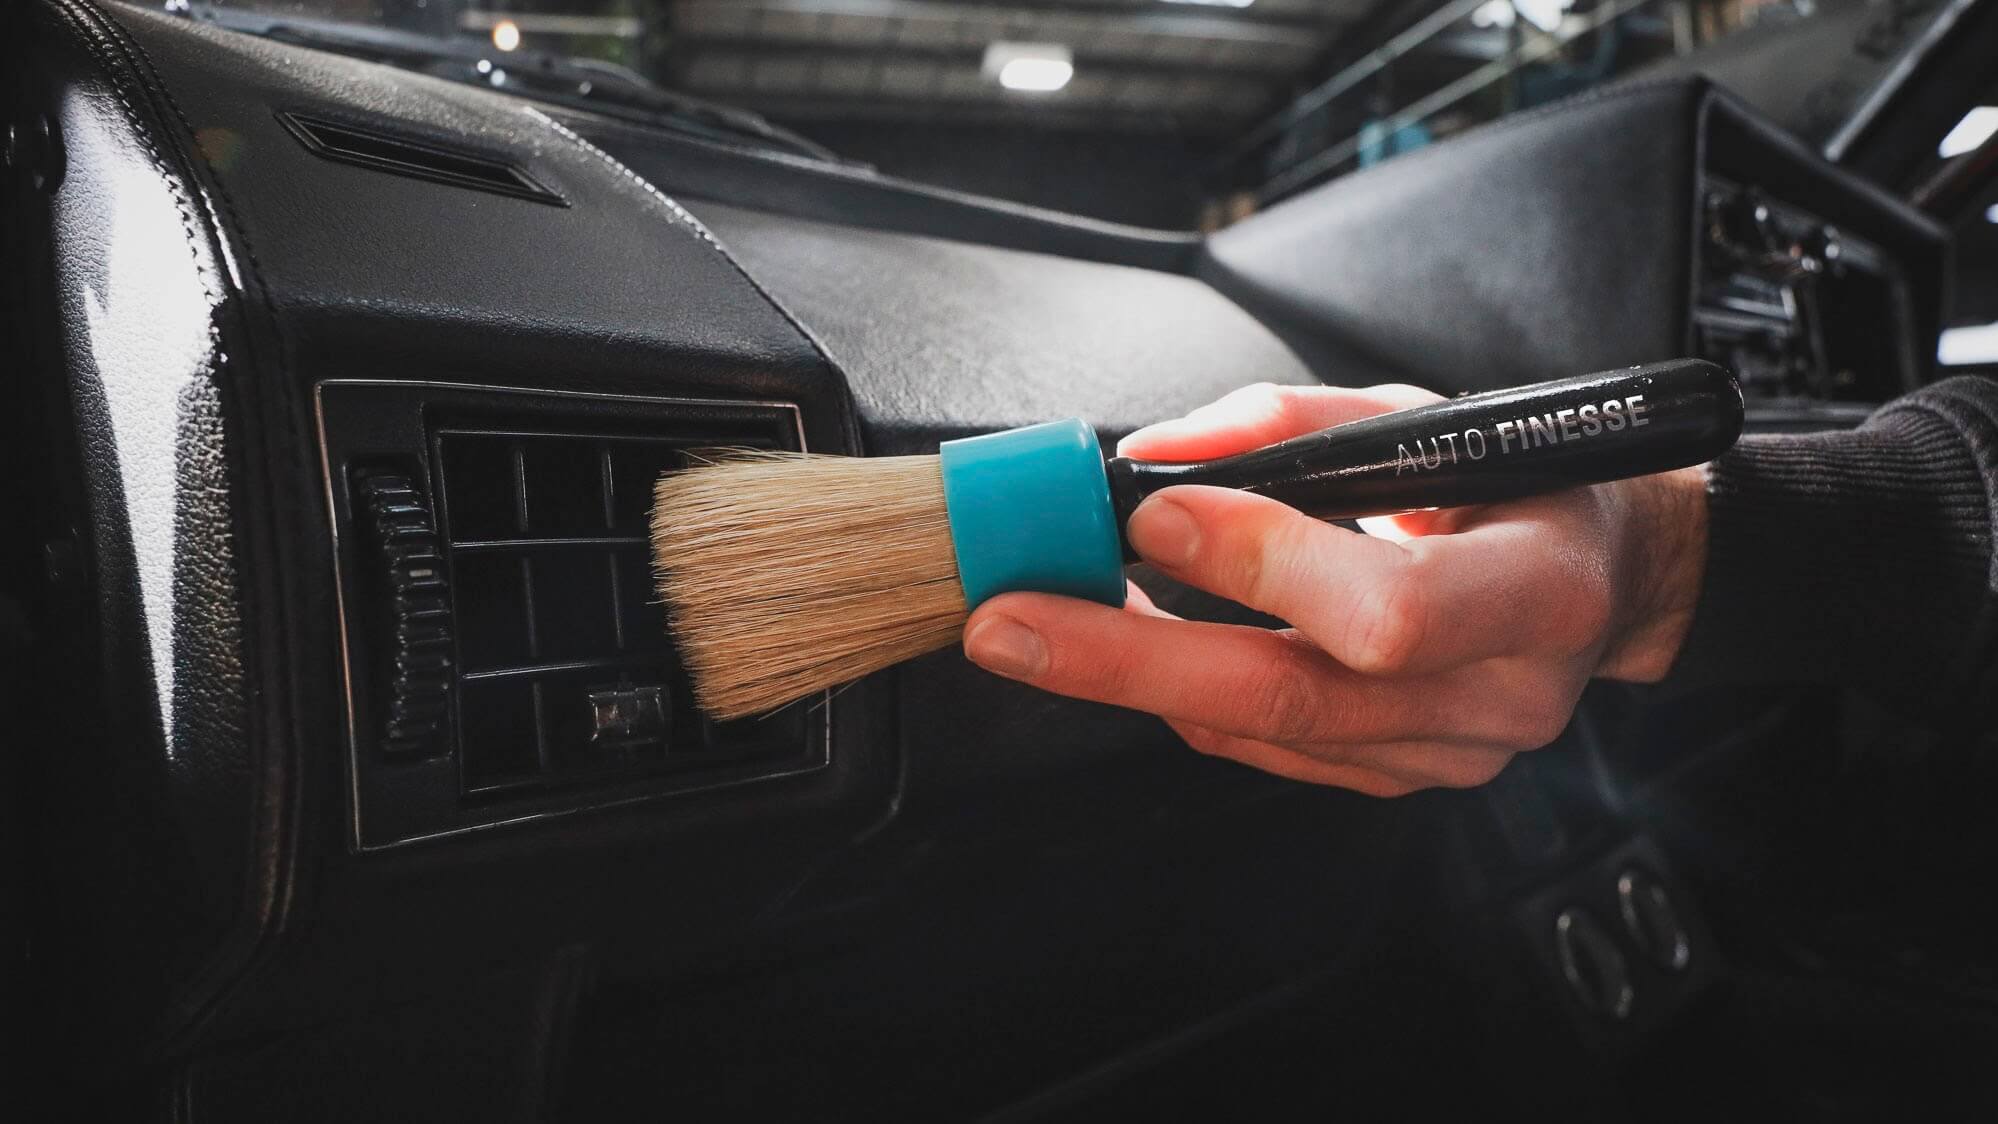 Auto Finesse | Soft Bristle Interior Detailing Brush